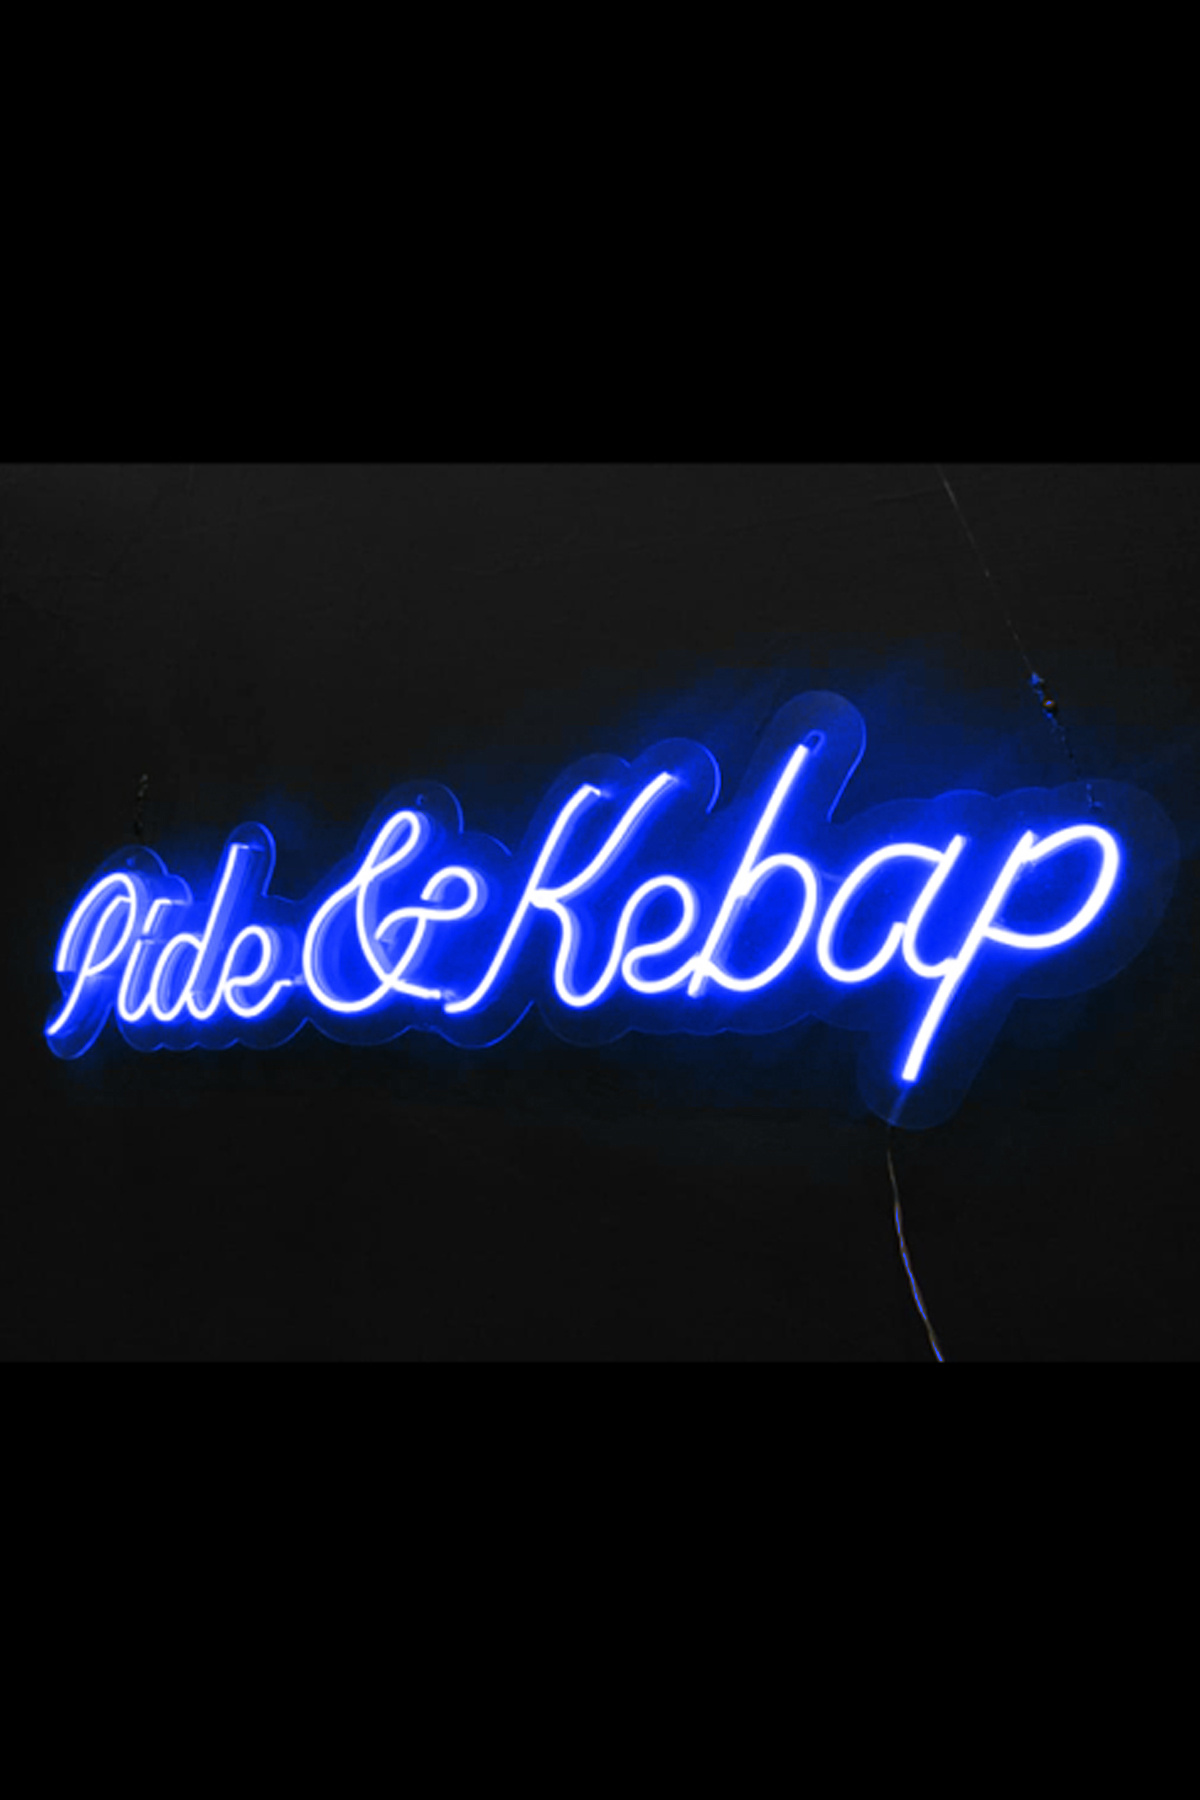 Pide & Kebap Yazılı Neon Led Işıklı Tablo Duvar Dekorasyon Ürünleri